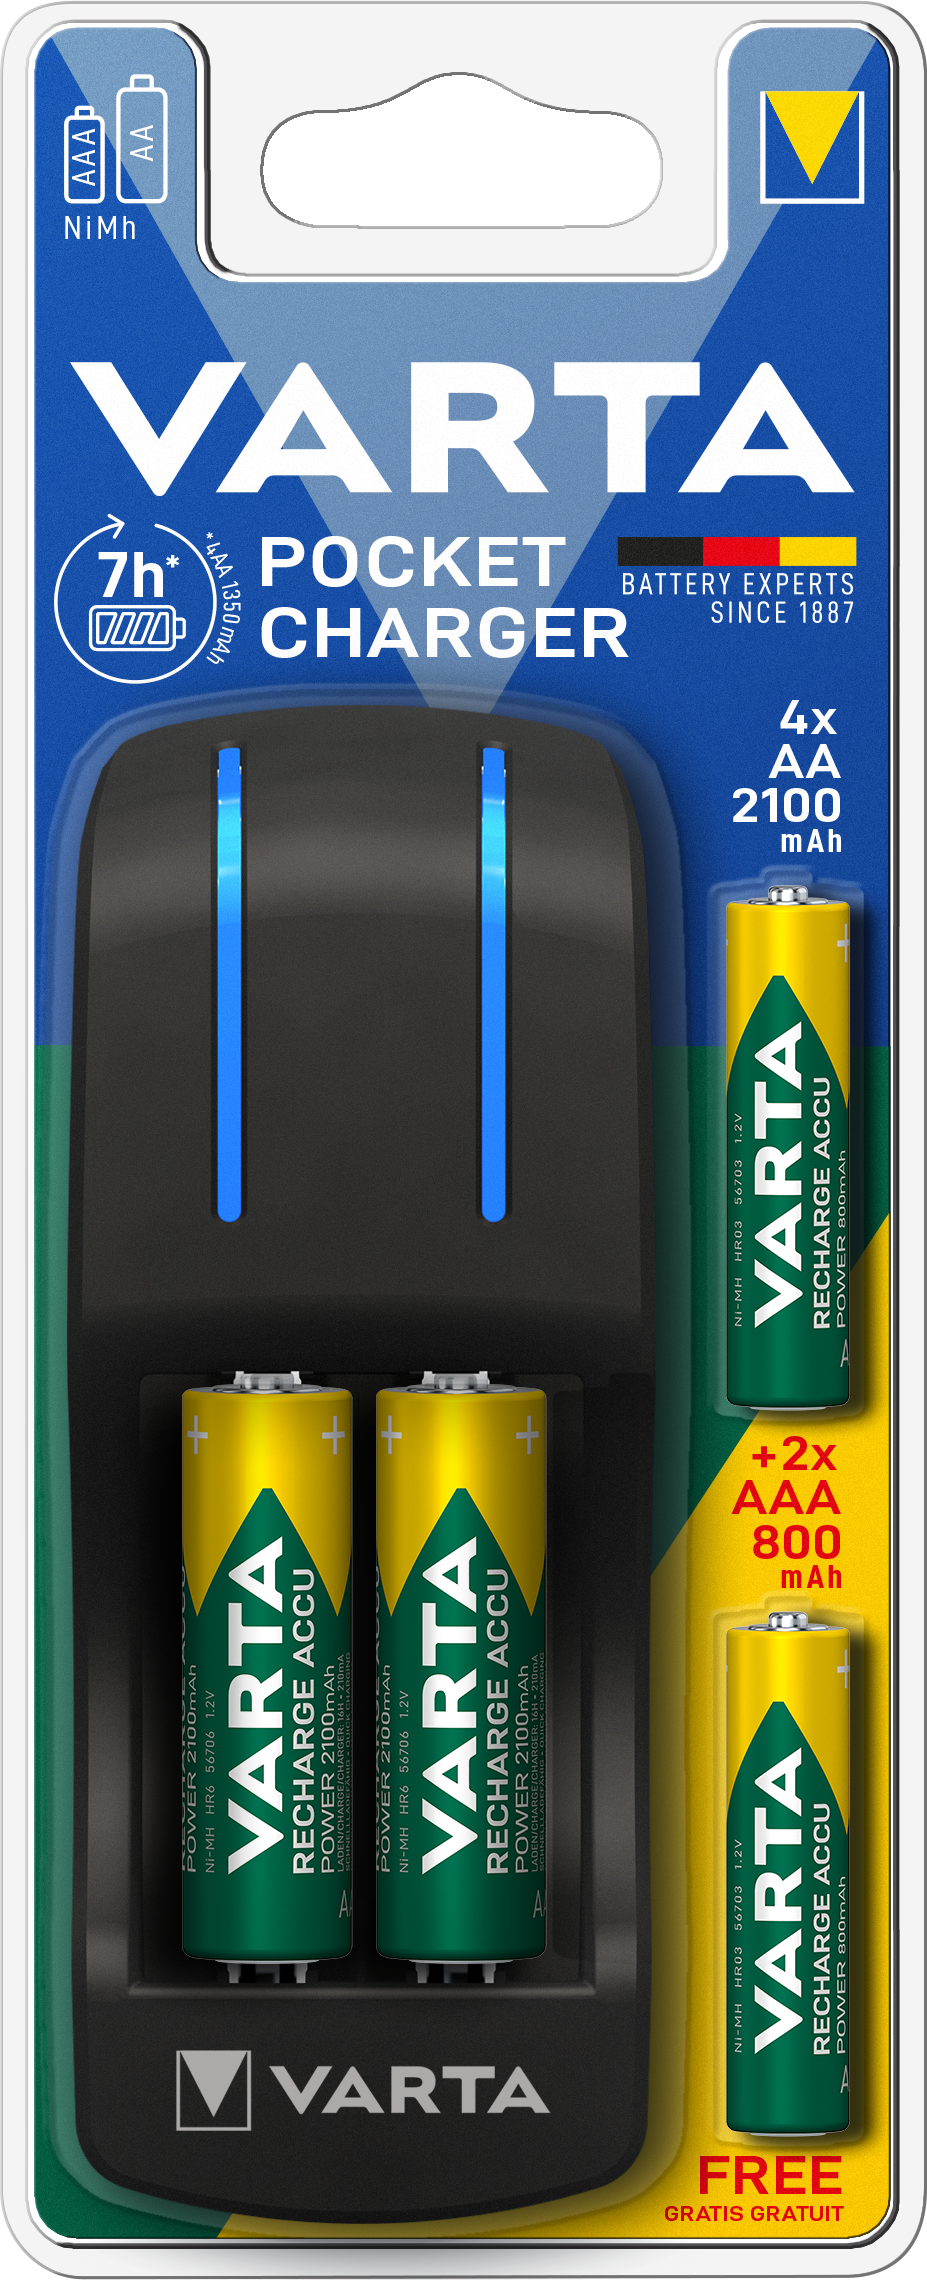 VARTA - Pocket Charger +2 AAA 800 +4 AA 2100